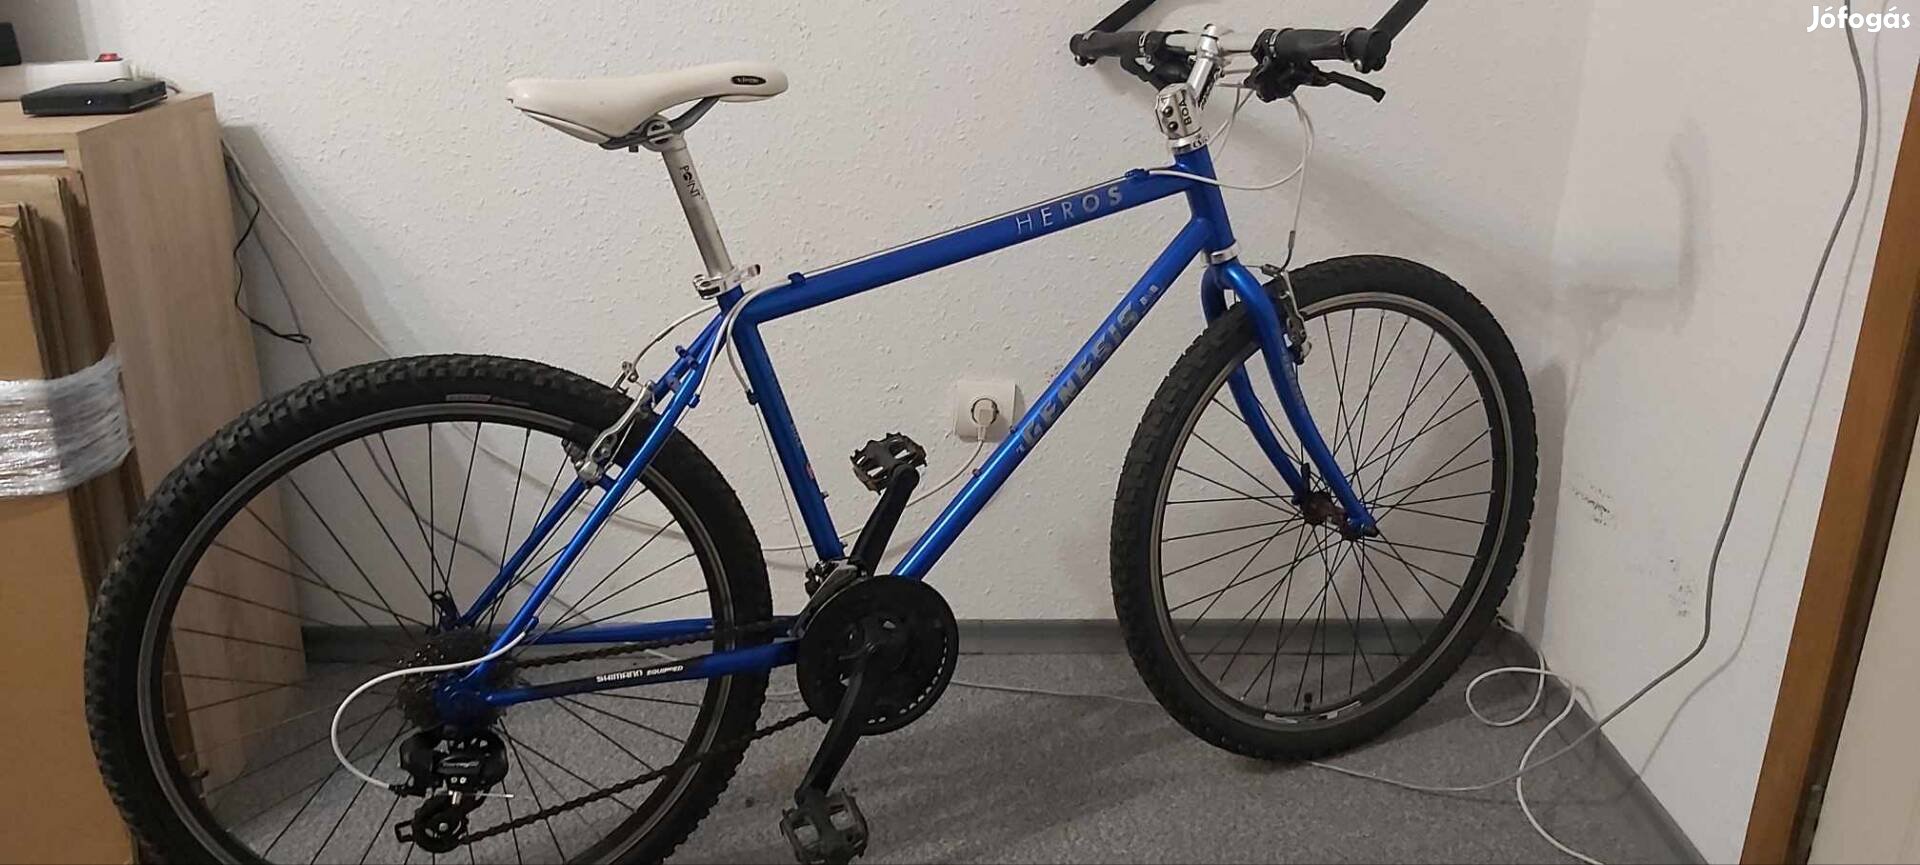 Genesis Heros kerékpár olcsón eladó